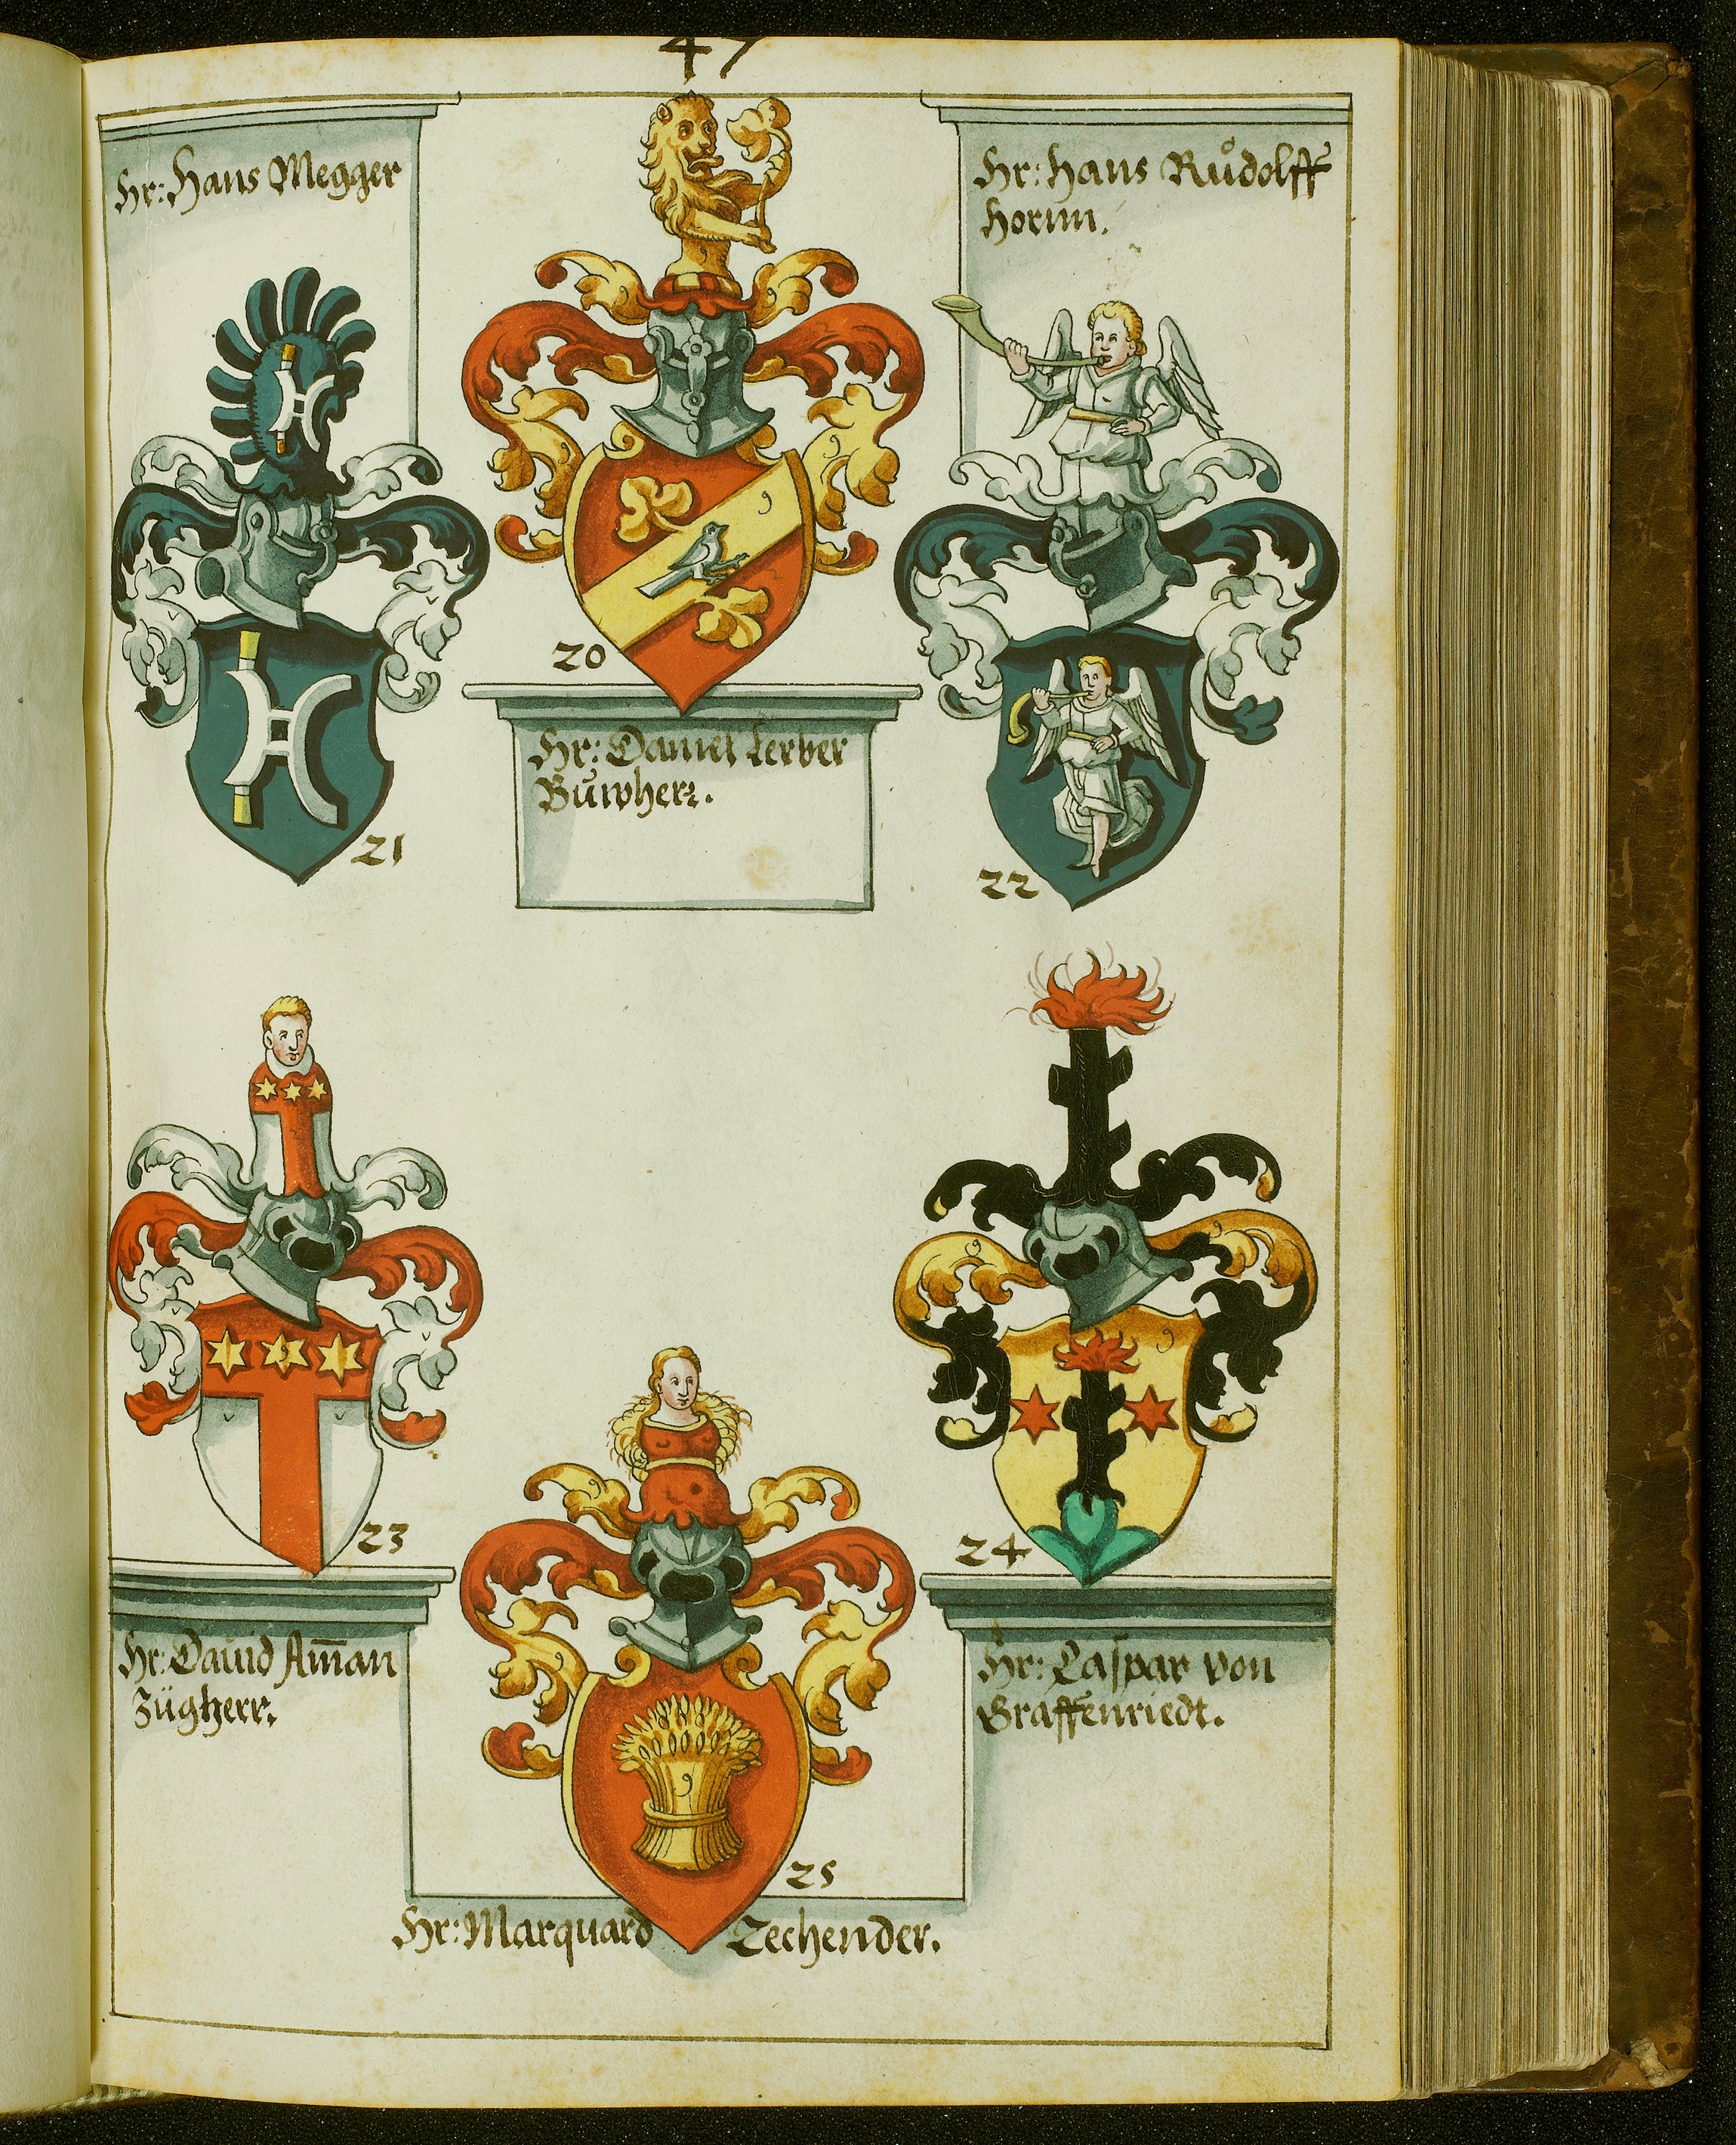 Wappenbuch von Johann Ulrich Fisch von 1622. Abbildung von sechs Wappen.